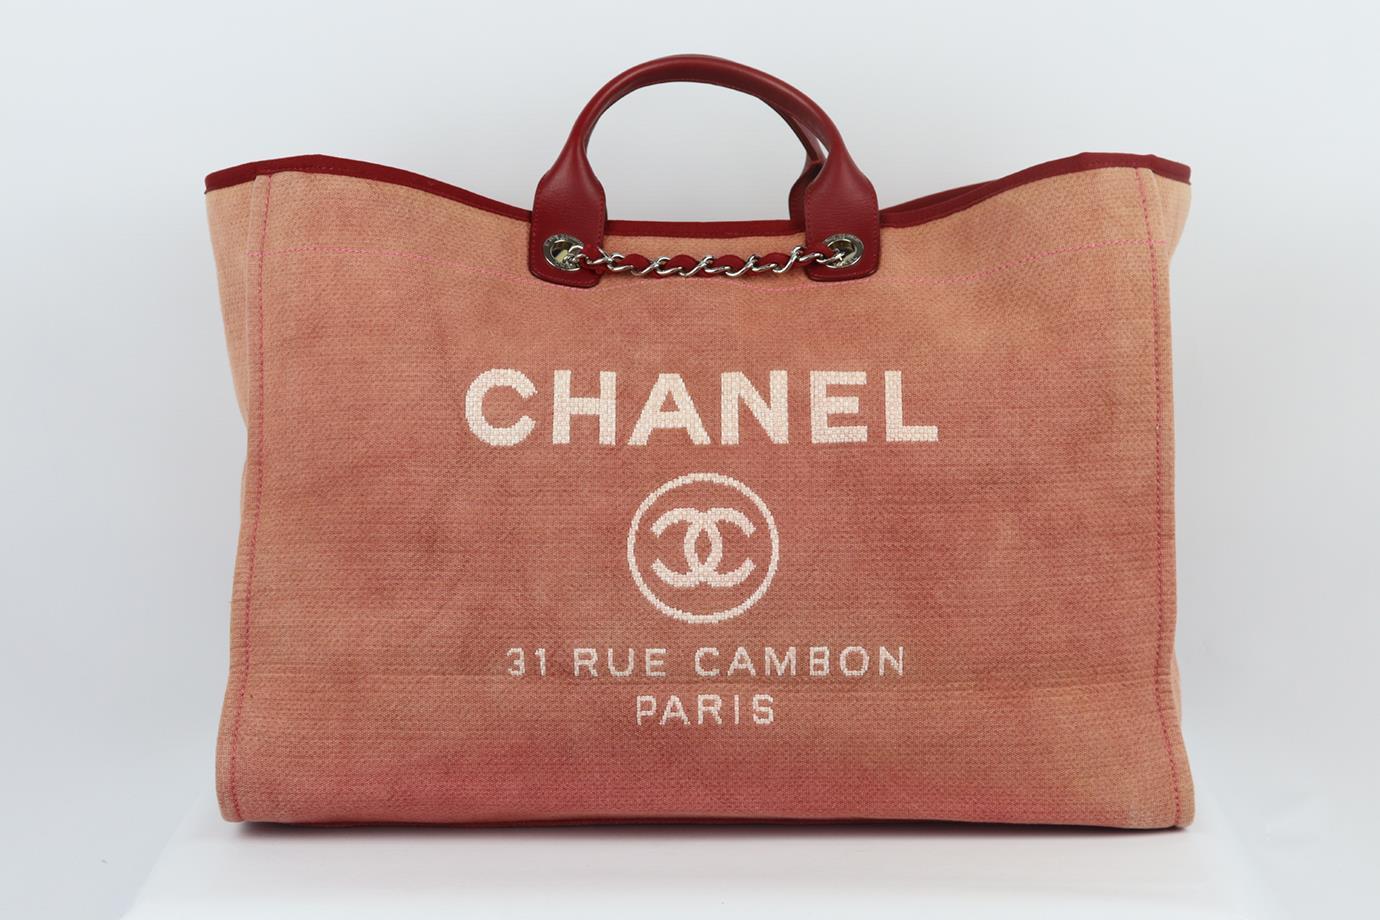 <ul>
<li>Chanel 2012 Deauville extra large tote bag en toile et cuir.</li>
<li>Fabriqué en Italie, ce magnifique sac fourre-tout Chanel 2012 extra large 'Deauville' a été réalisé en toile rose poussiéreuse à l'extérieur avec un intérieur bordeaux